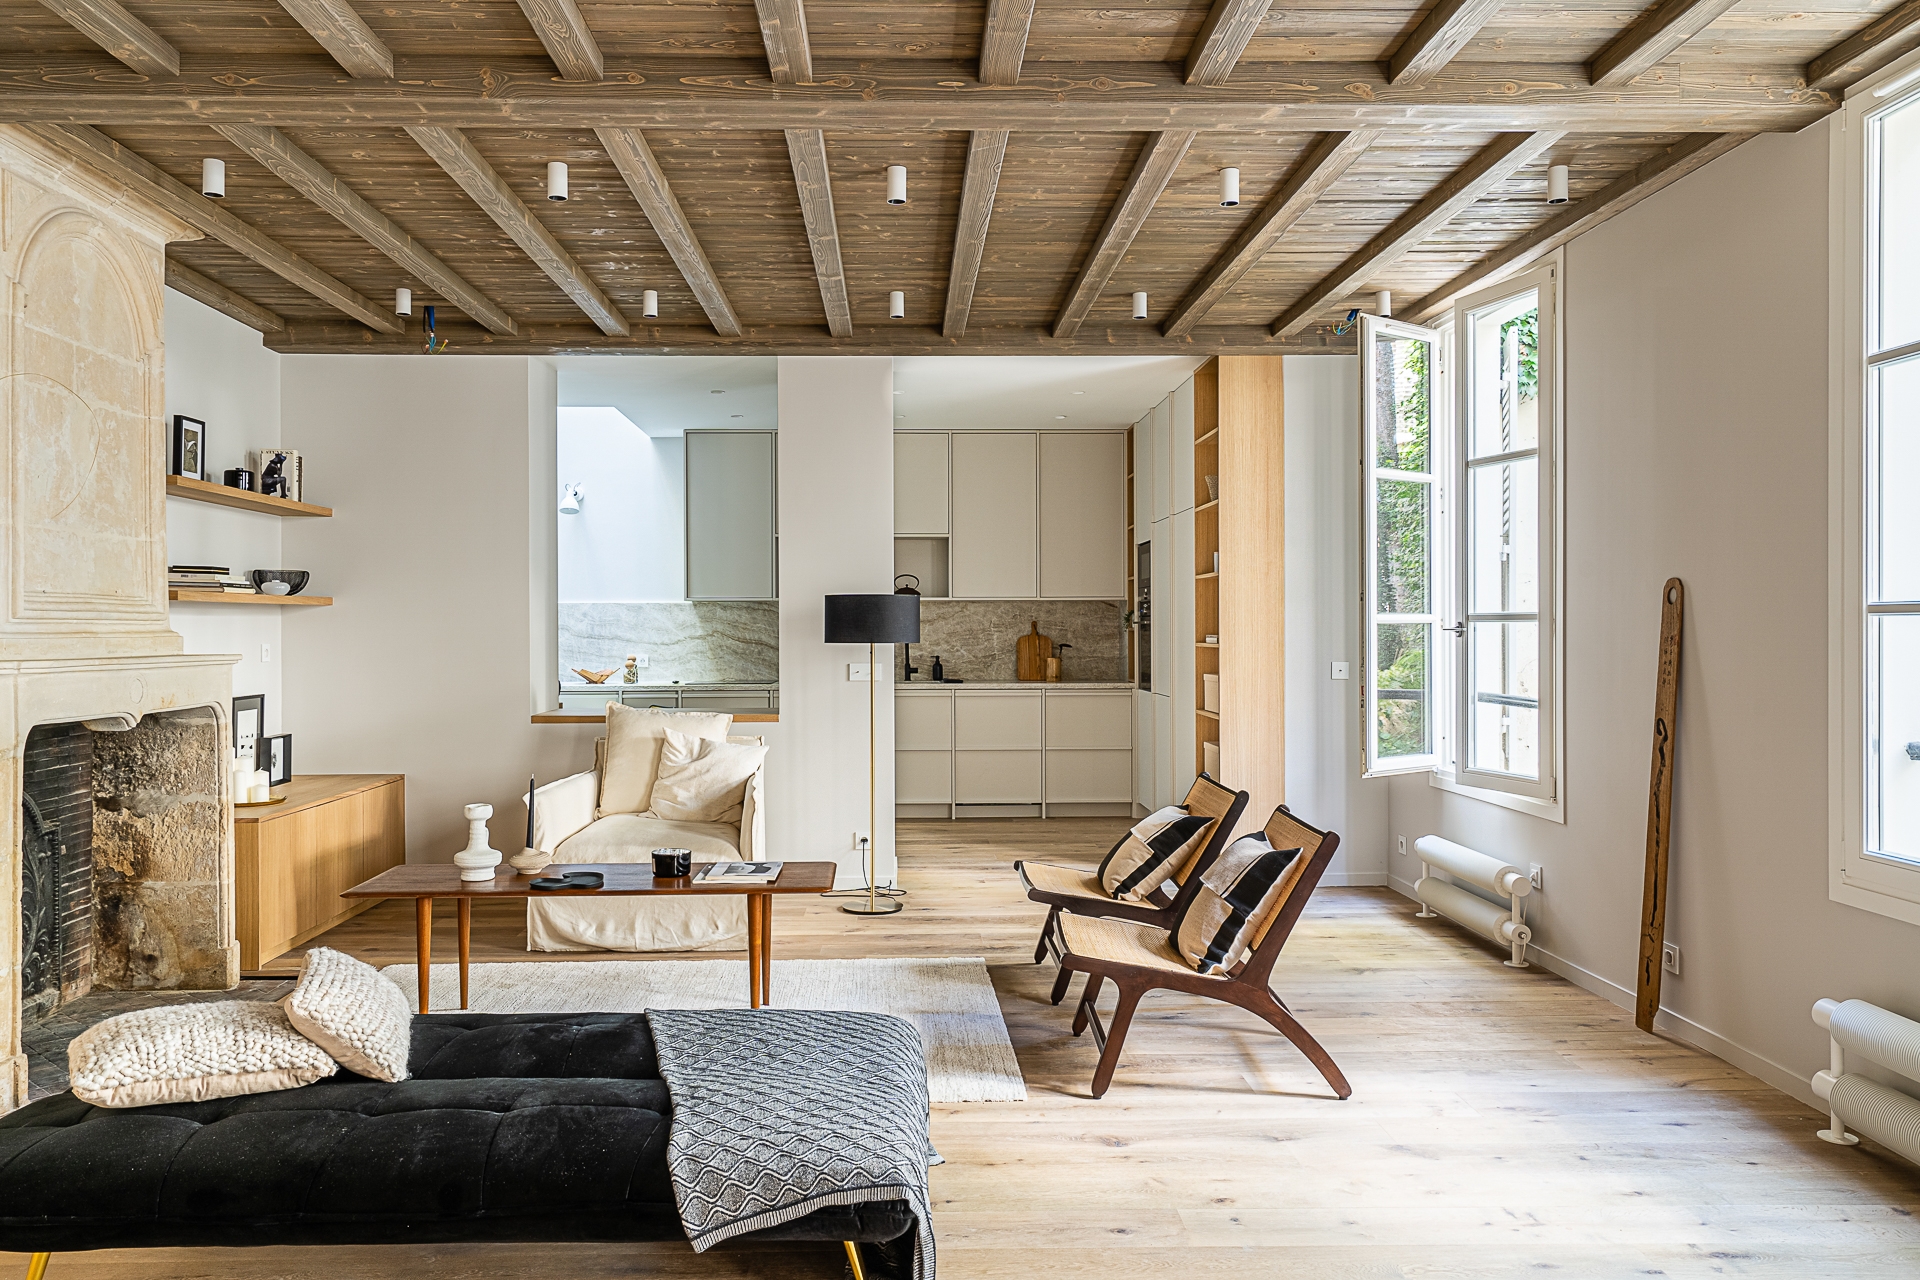 Intérierur décoration Salon cheminé en pierre et plafond de bois ouvert sur cuisine